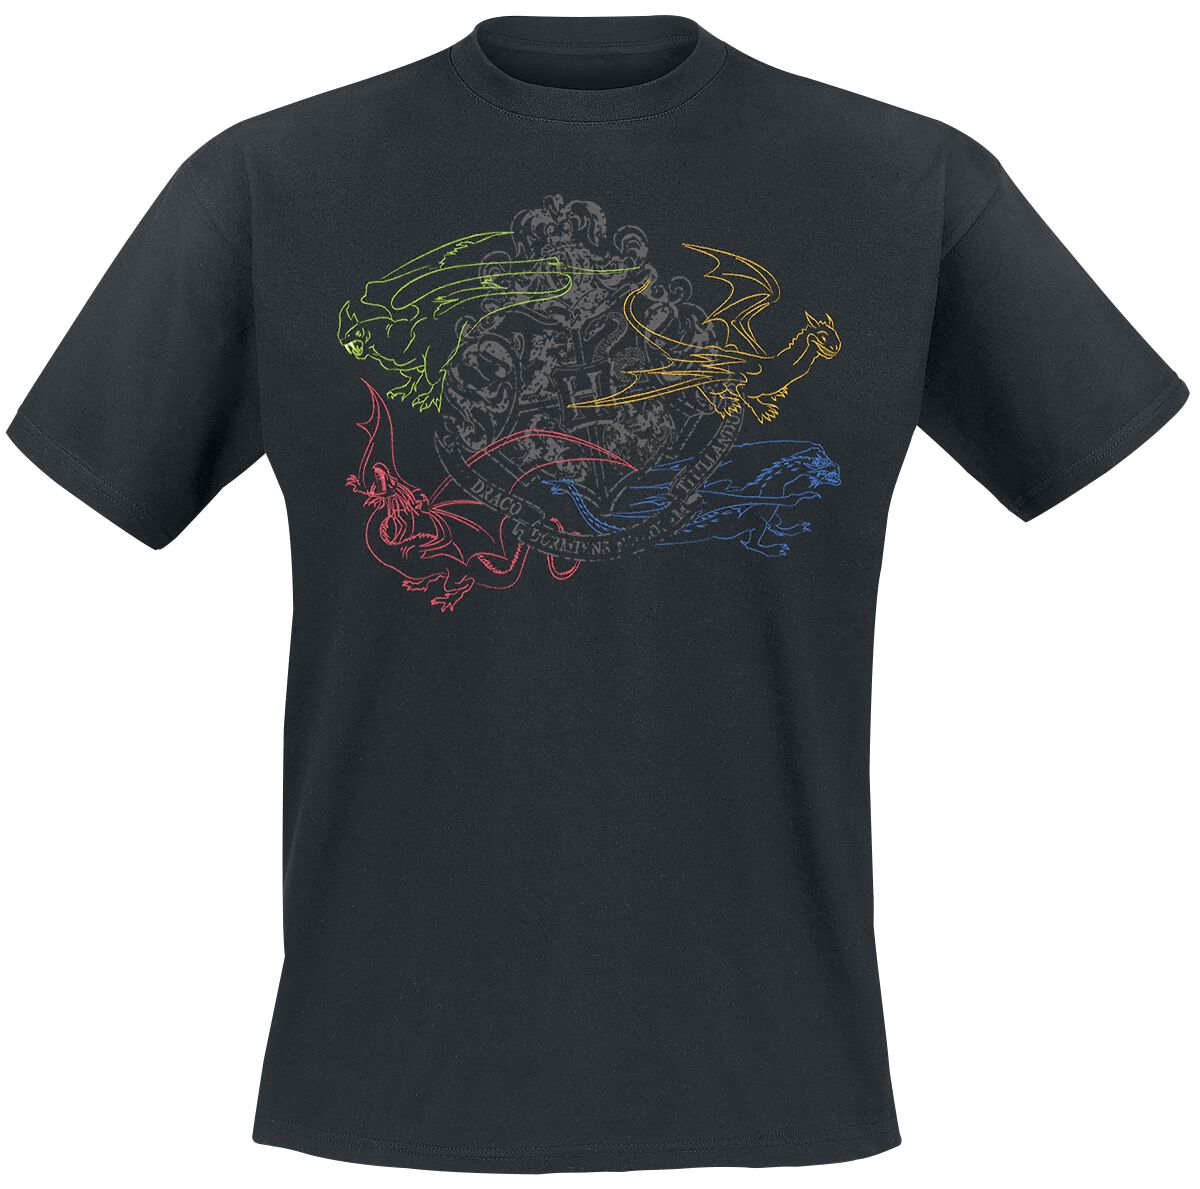 Harry Potter Dragon Outline Sigil T-Shirt black